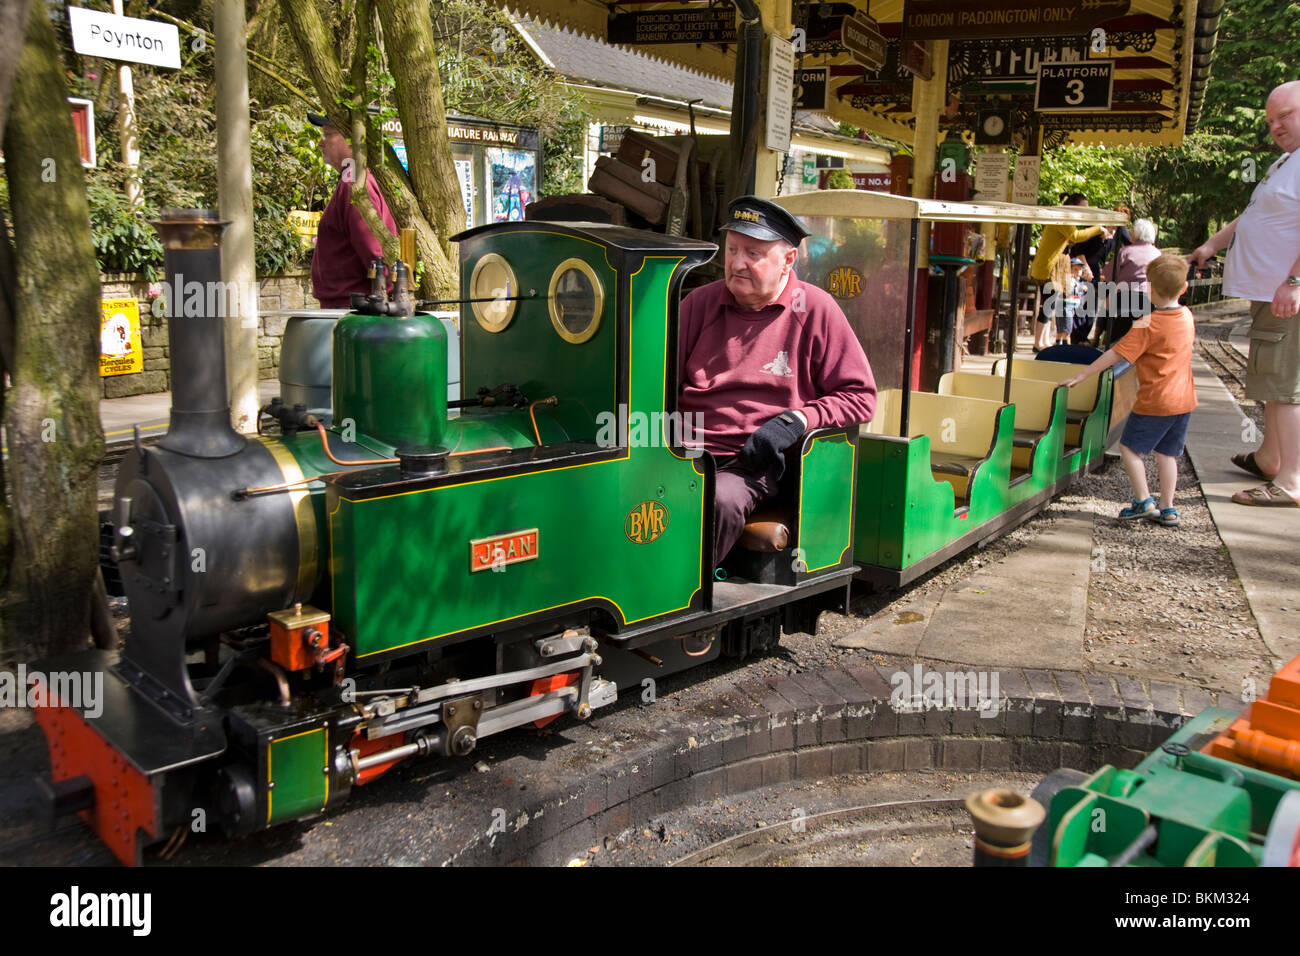 Miniatur / Modell schmale Spurweite Lokomotive Eisenbahn Dampfzug und Fahrer am Brookside Gartencenter, Poynton. Cheshire. VEREINIGTES KÖNIGREICH. Stockfoto